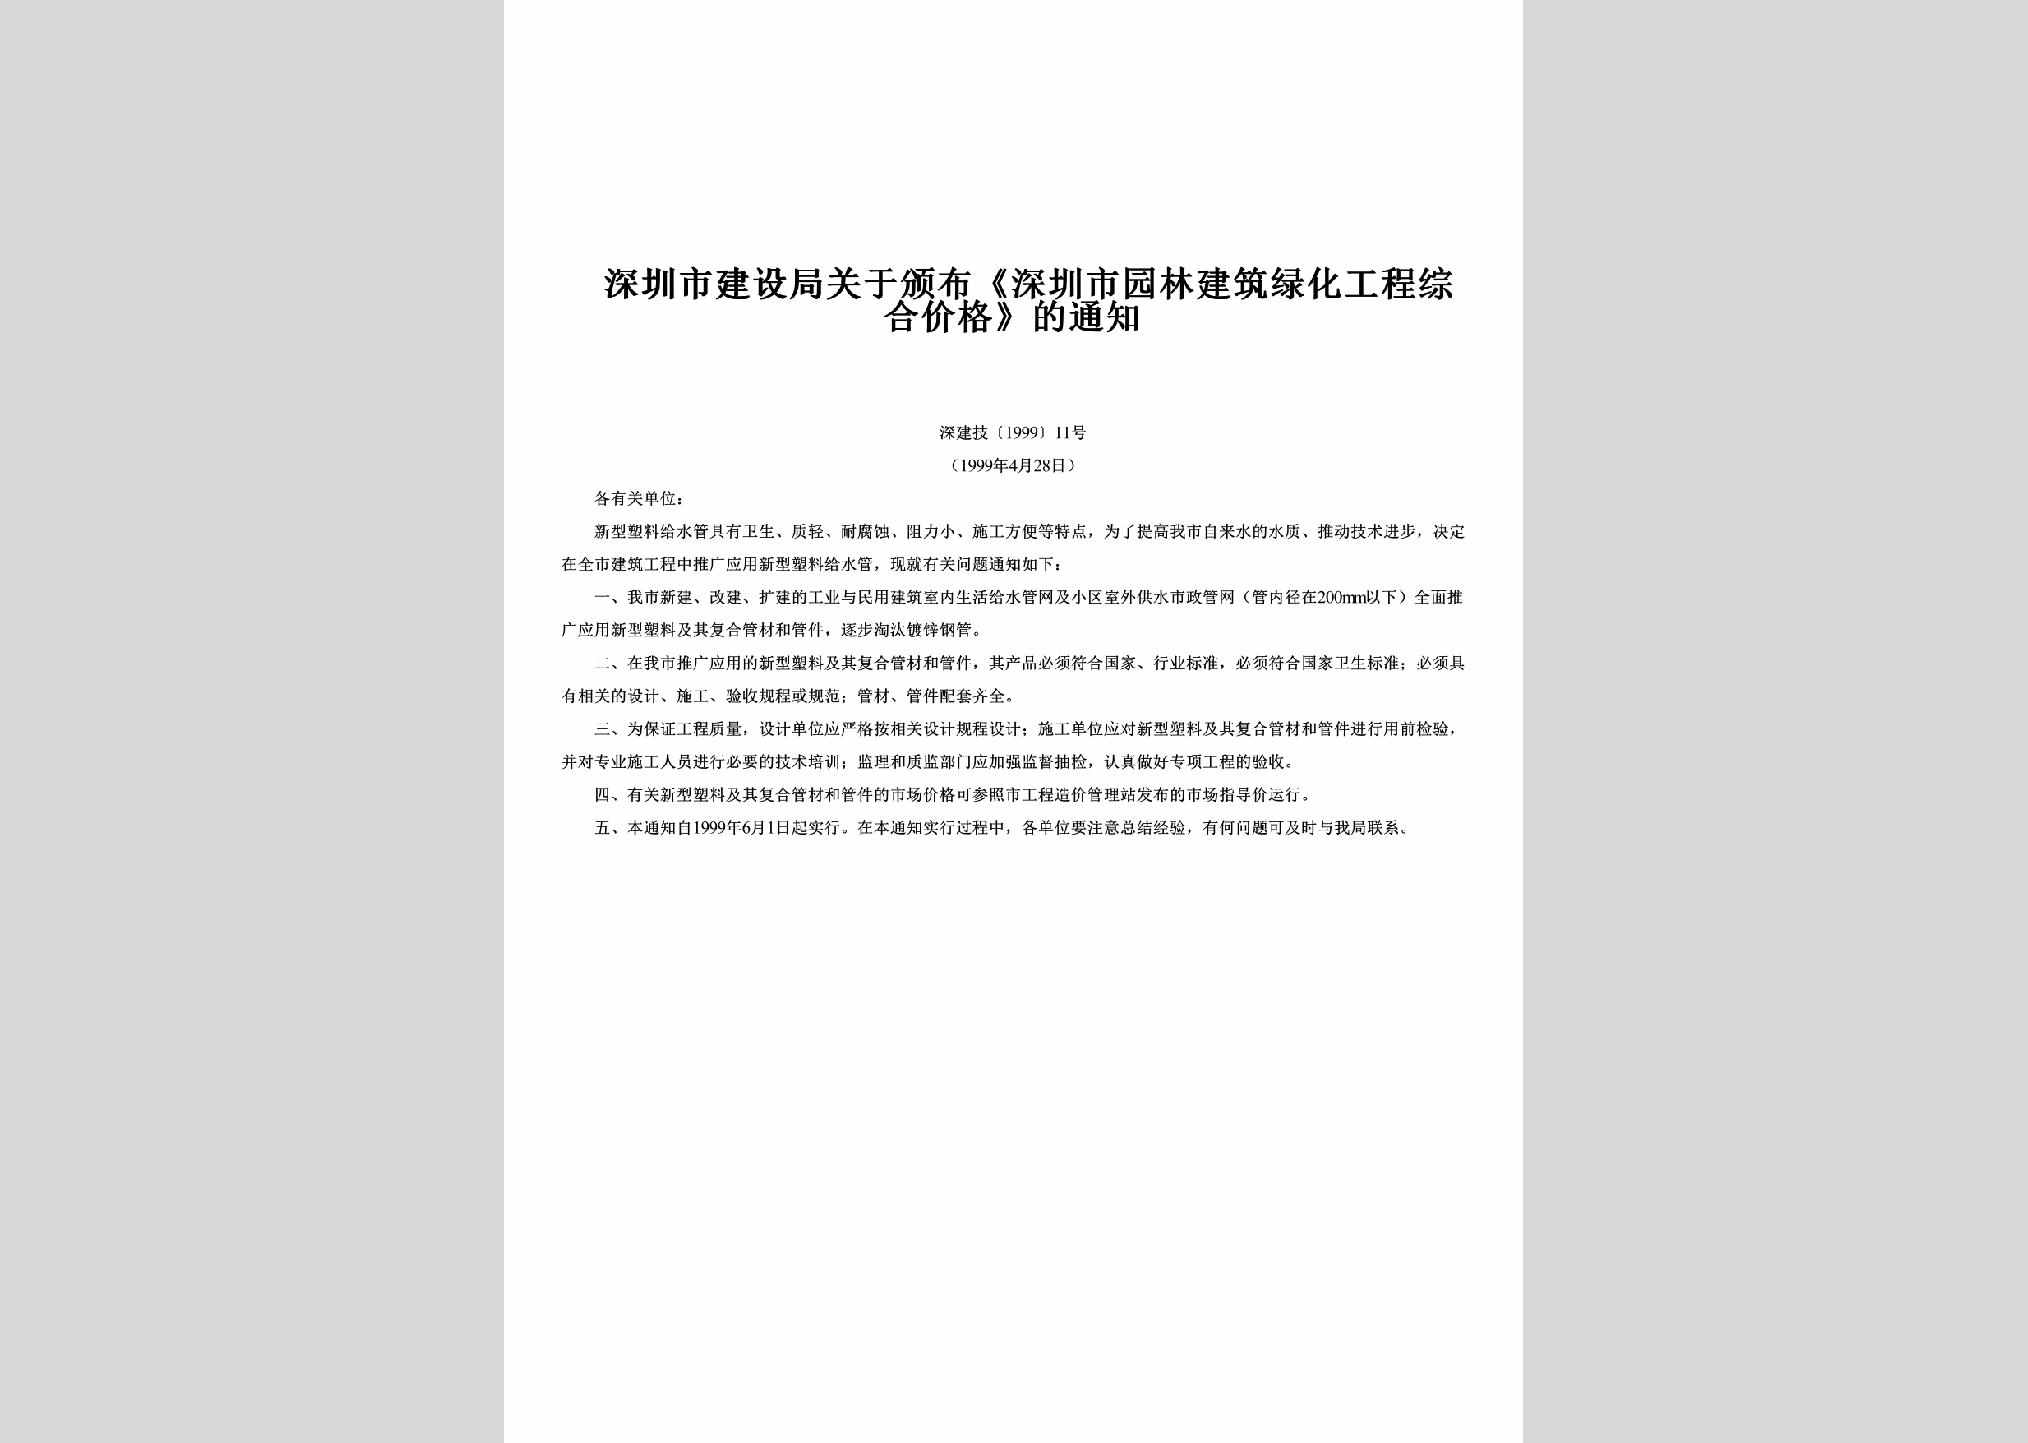 深建字[1999]11号：关于颁布《深圳市园林建筑绿化工程综合价格》的通知